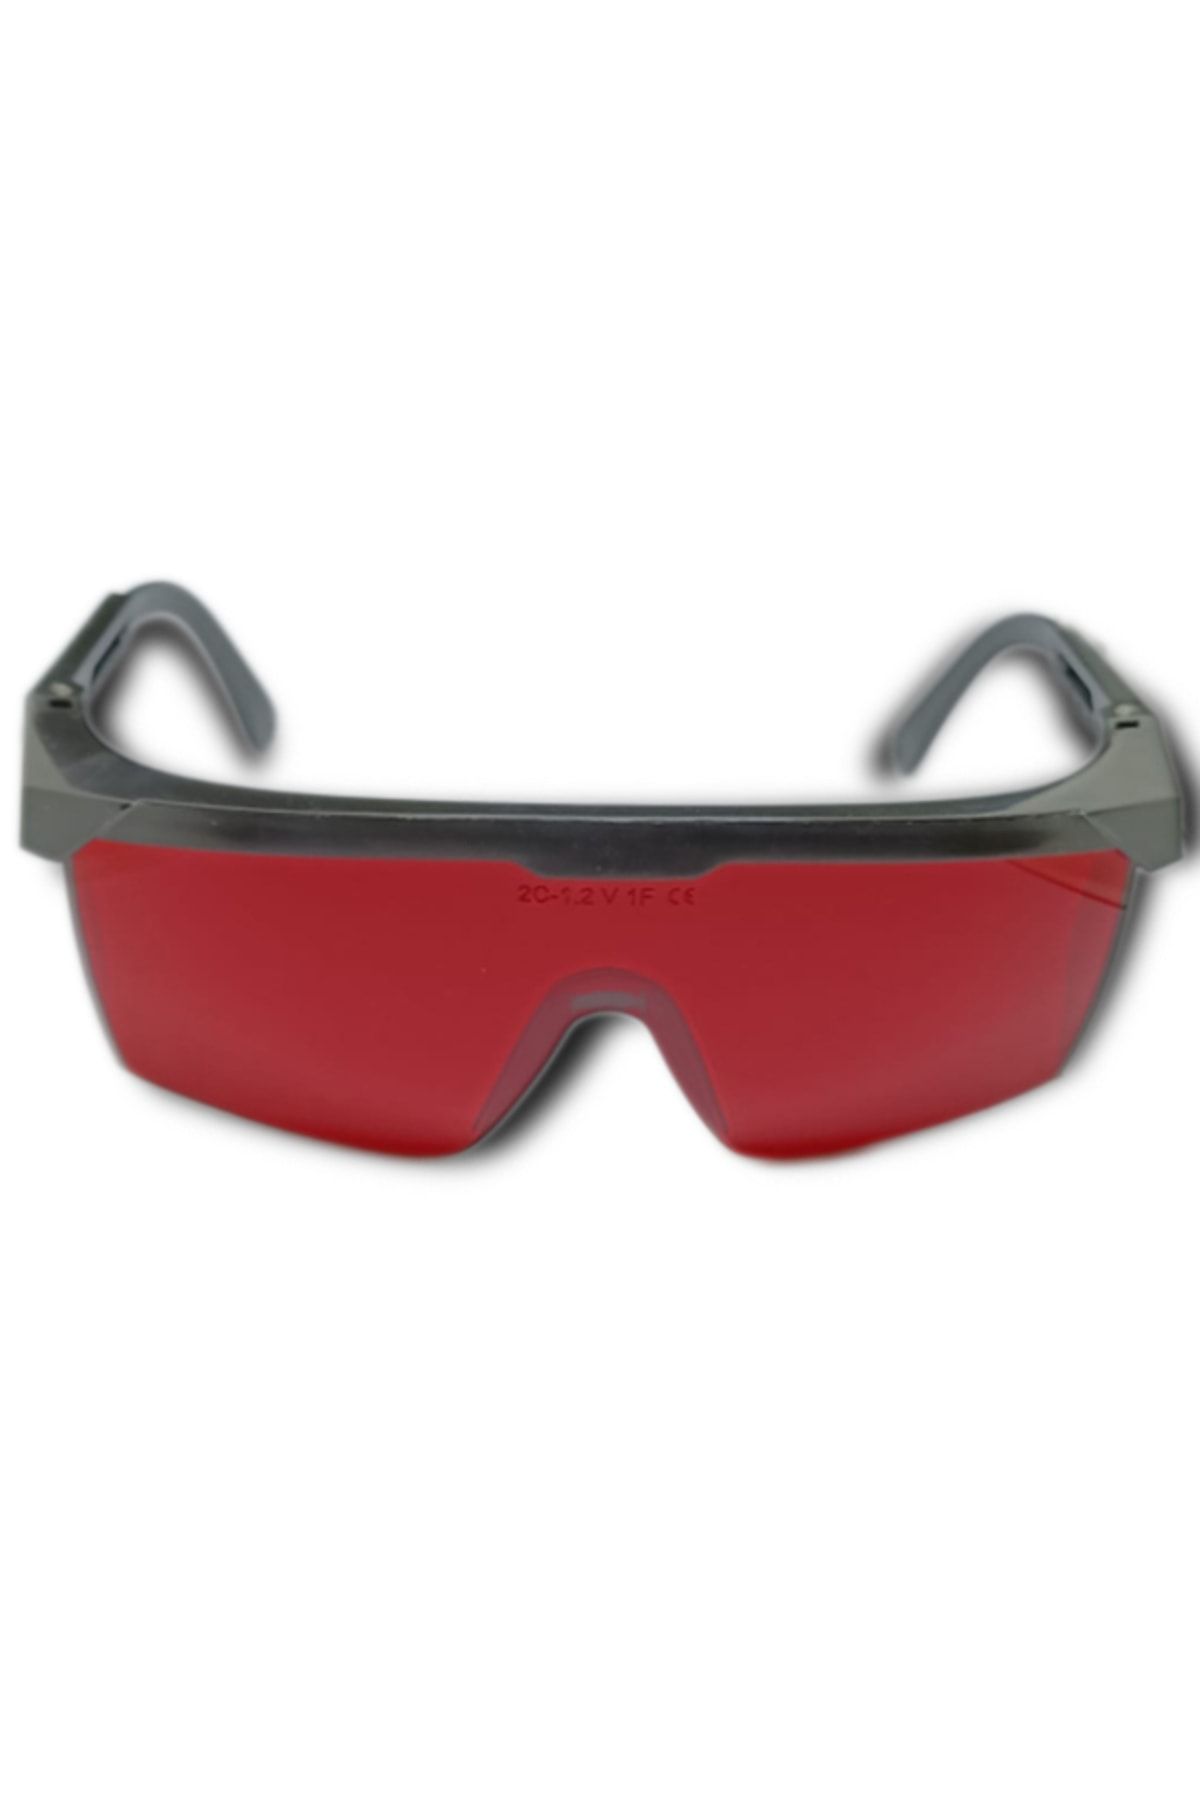 ARMONİKONYA Kırmızı Ipl Lazer Uygulama Epilasyon Gözlüğü Mavi Işın Koruyucu Gözlük Göz Koruyucu Lazer Estetisyen